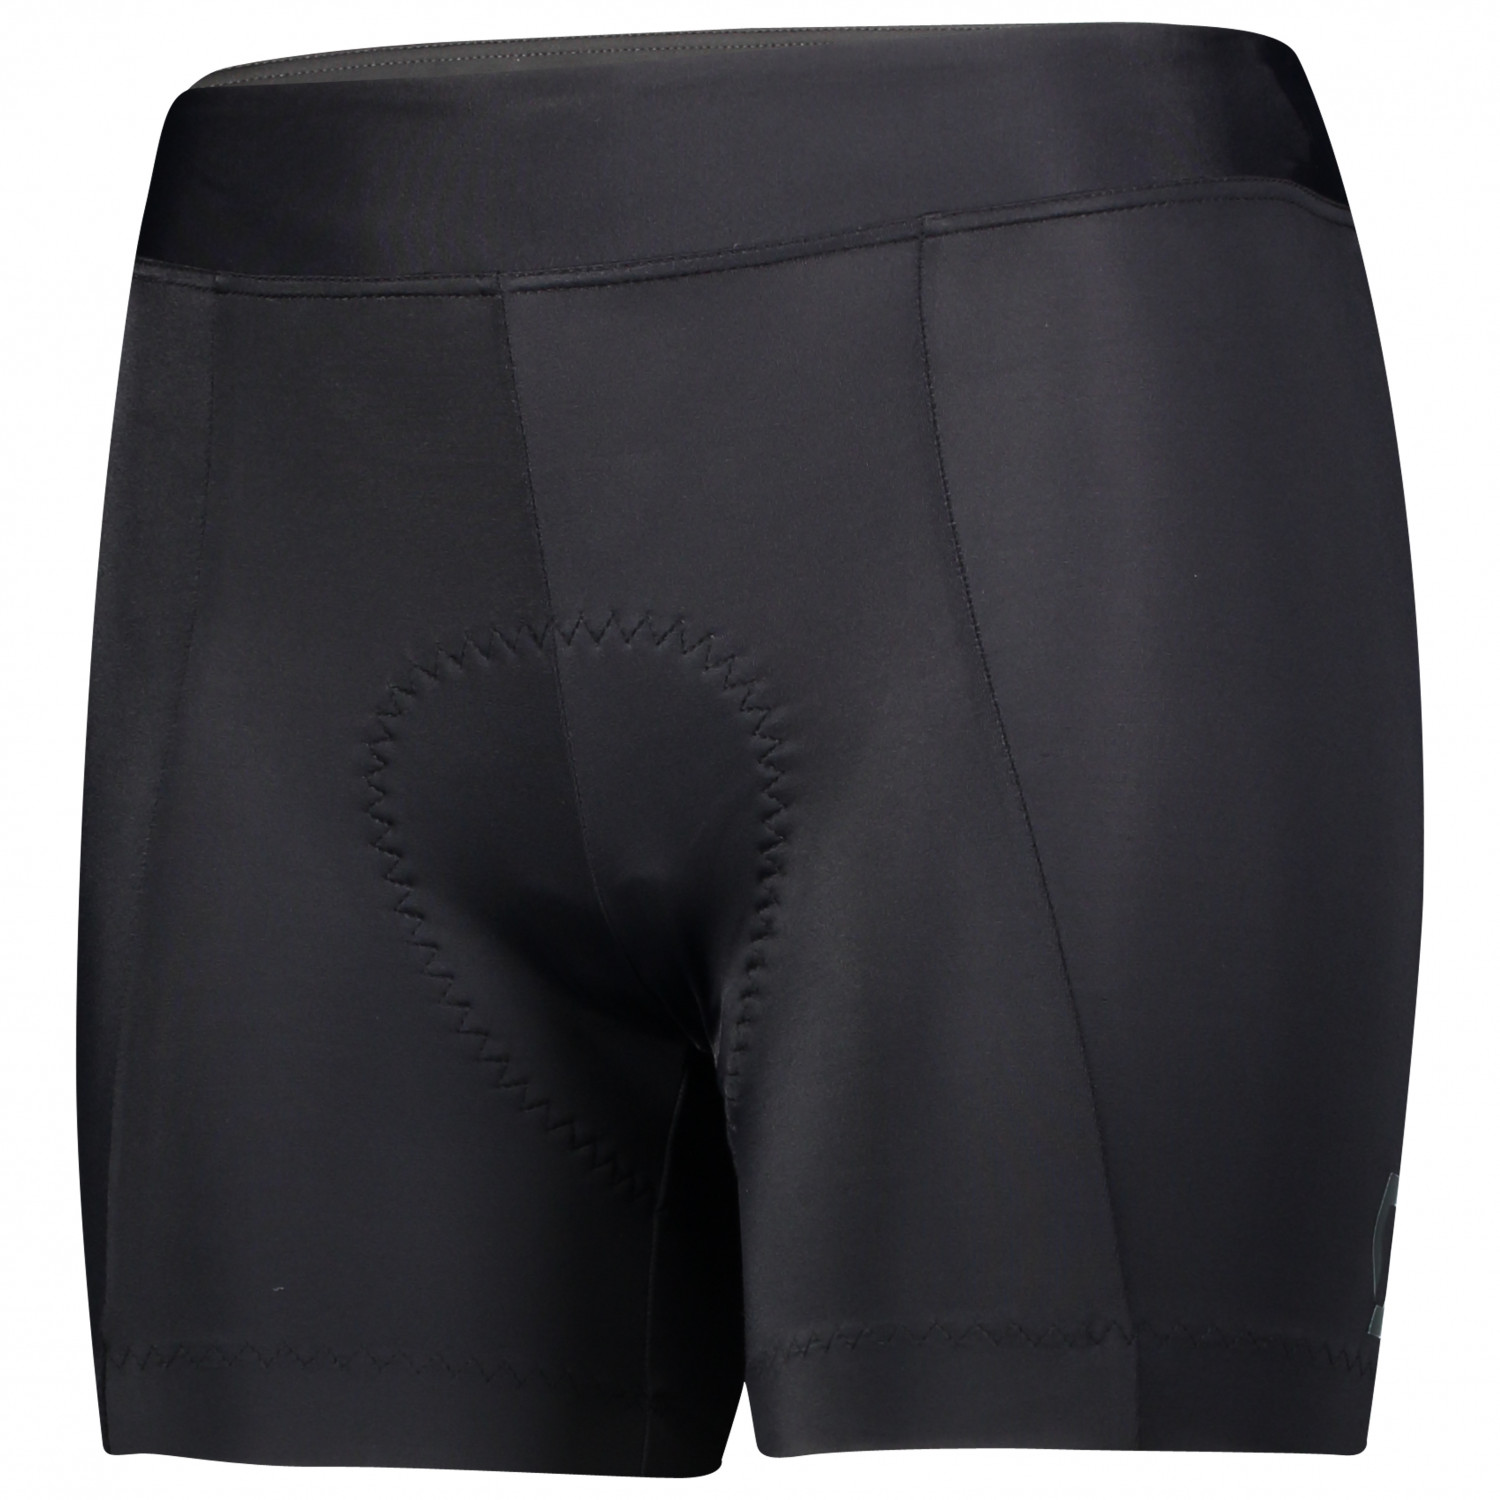 Велосипедные шорты Scott Women's Shorts Endurance 20 ++, цвет Black/Dark Grey спортивные шорты endurance цвет black